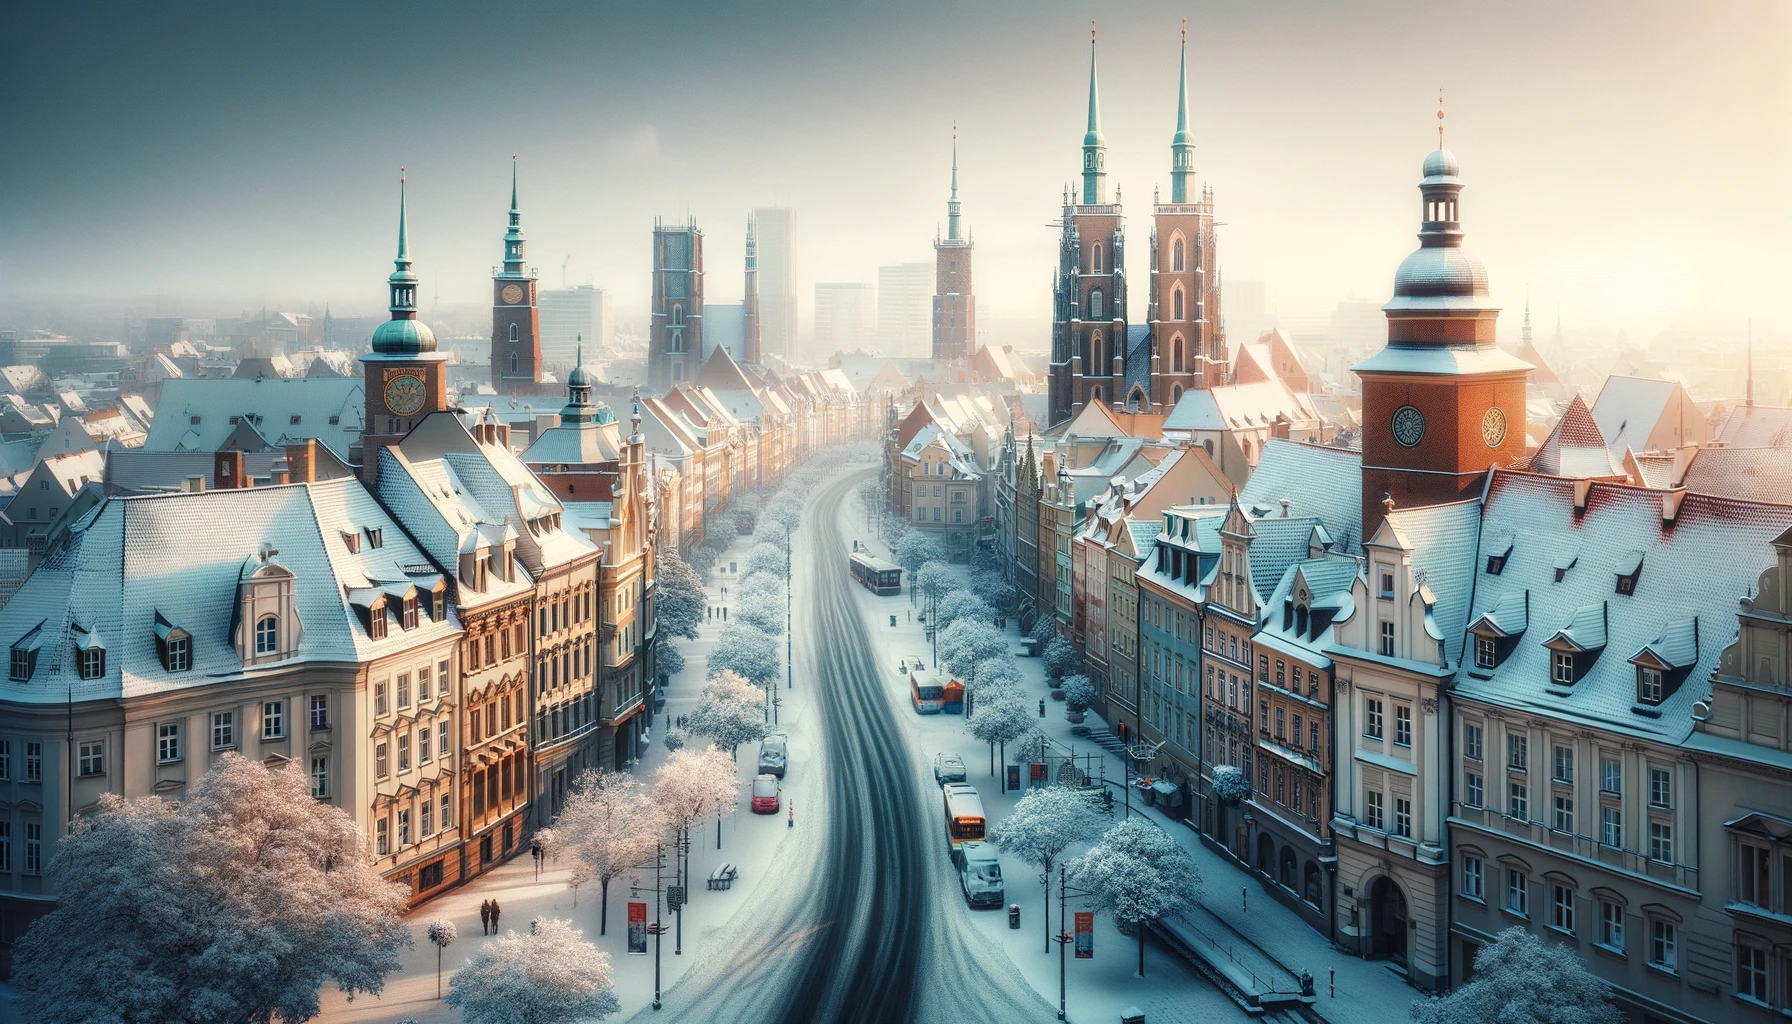 Wrocławskie ulice pokryte śniegiem, zabytkowa architektura w tle.